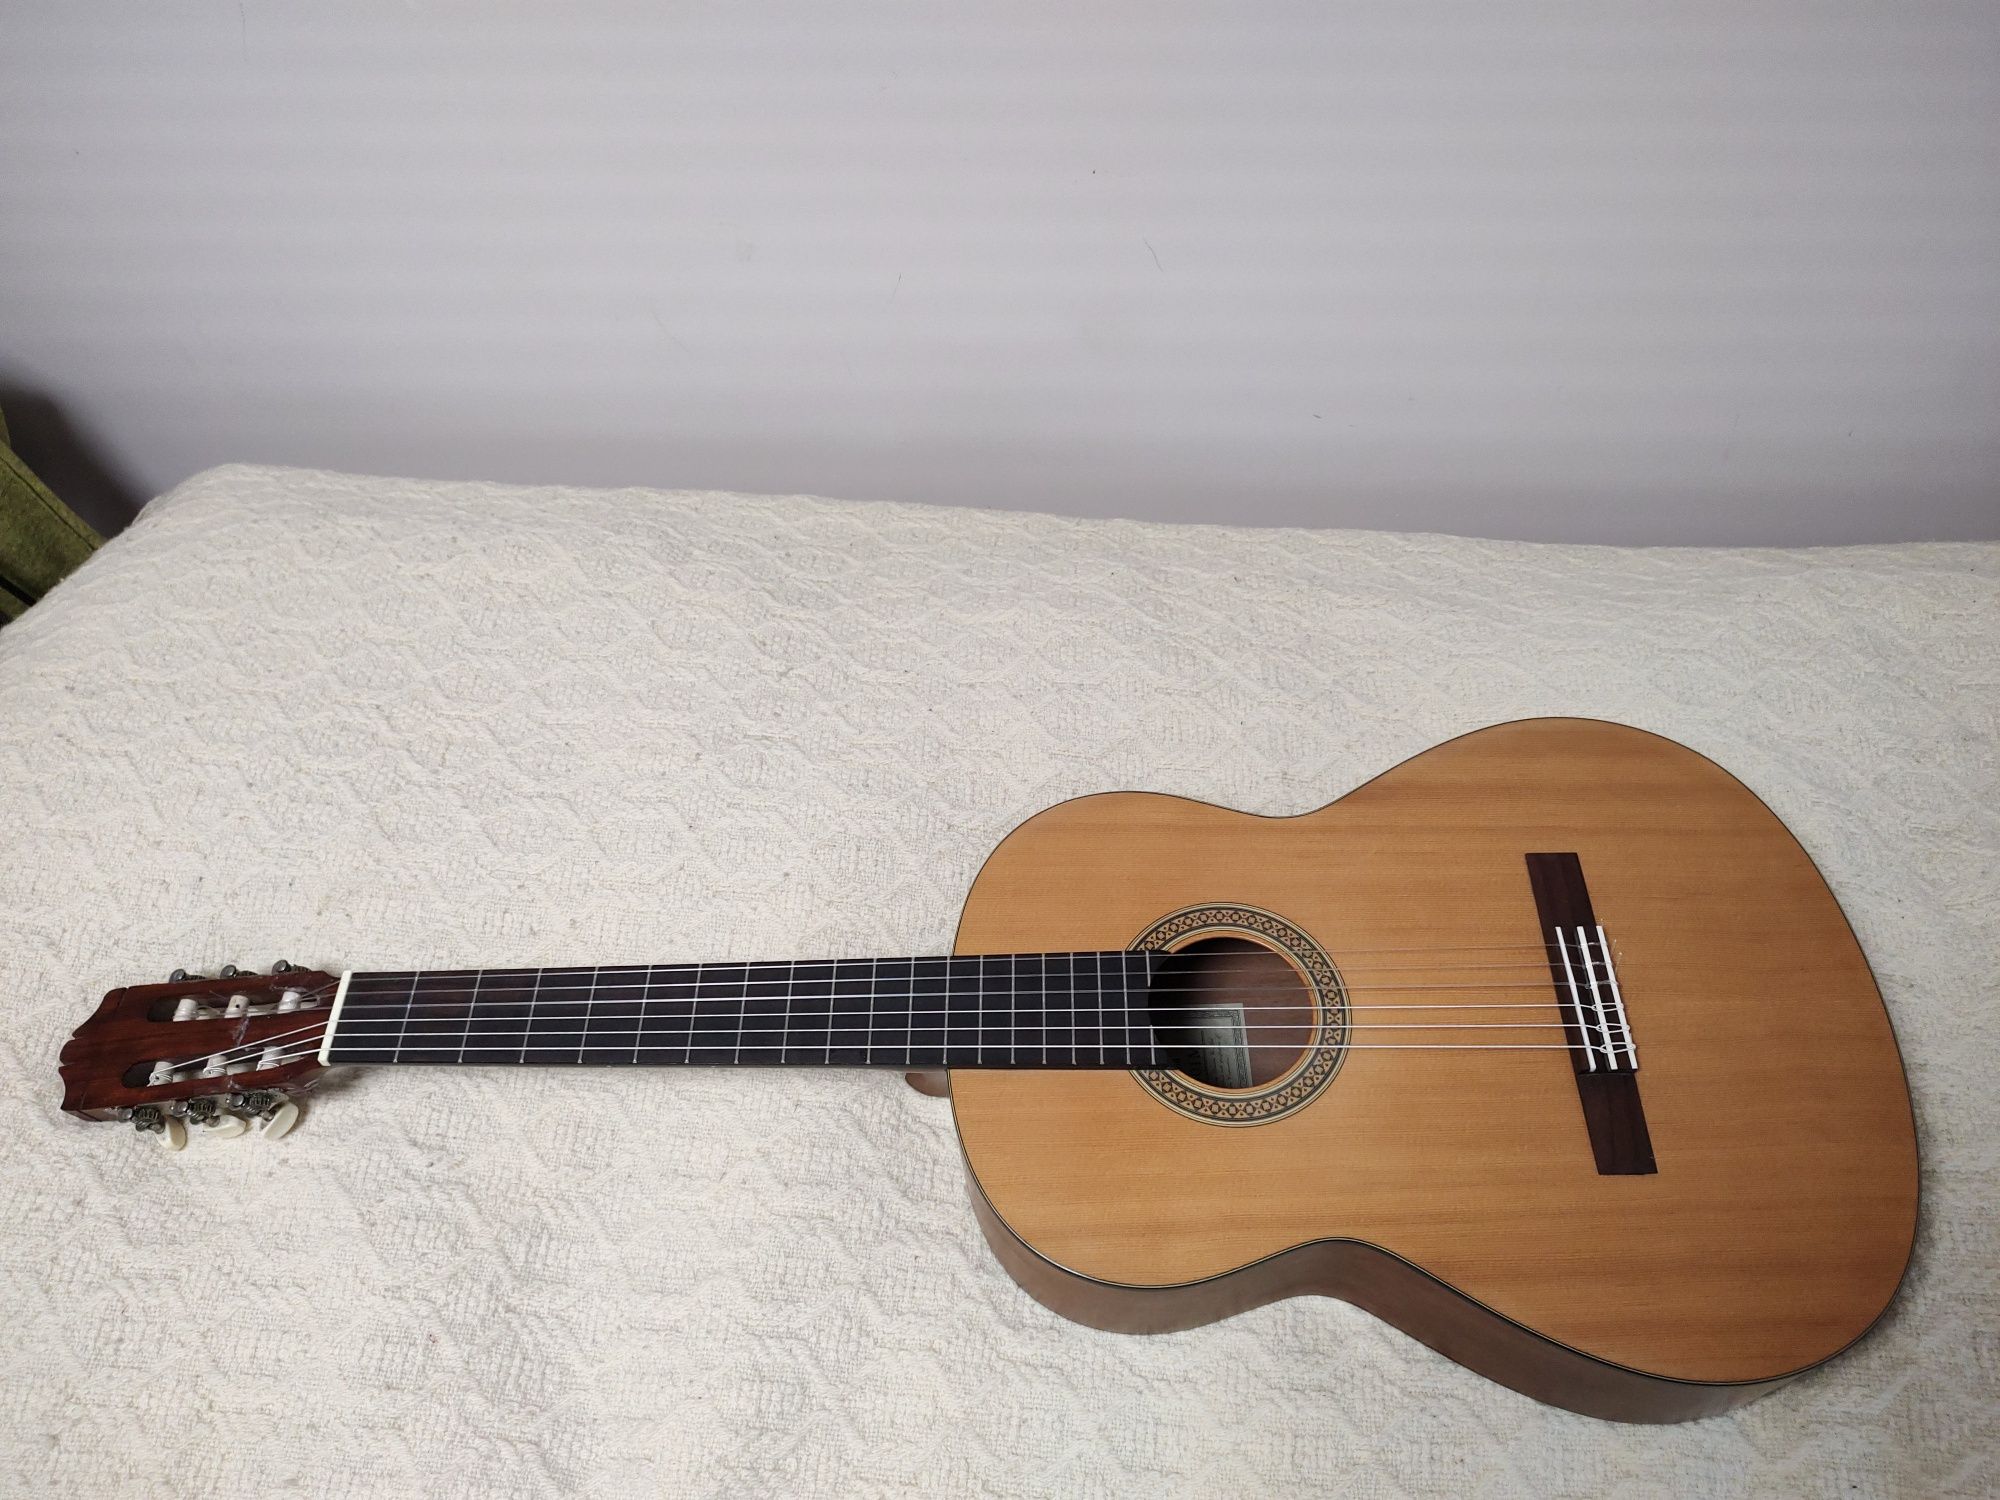 Yamaha CG-101M gitara klasyczna TANIO świetne brzmienie !!